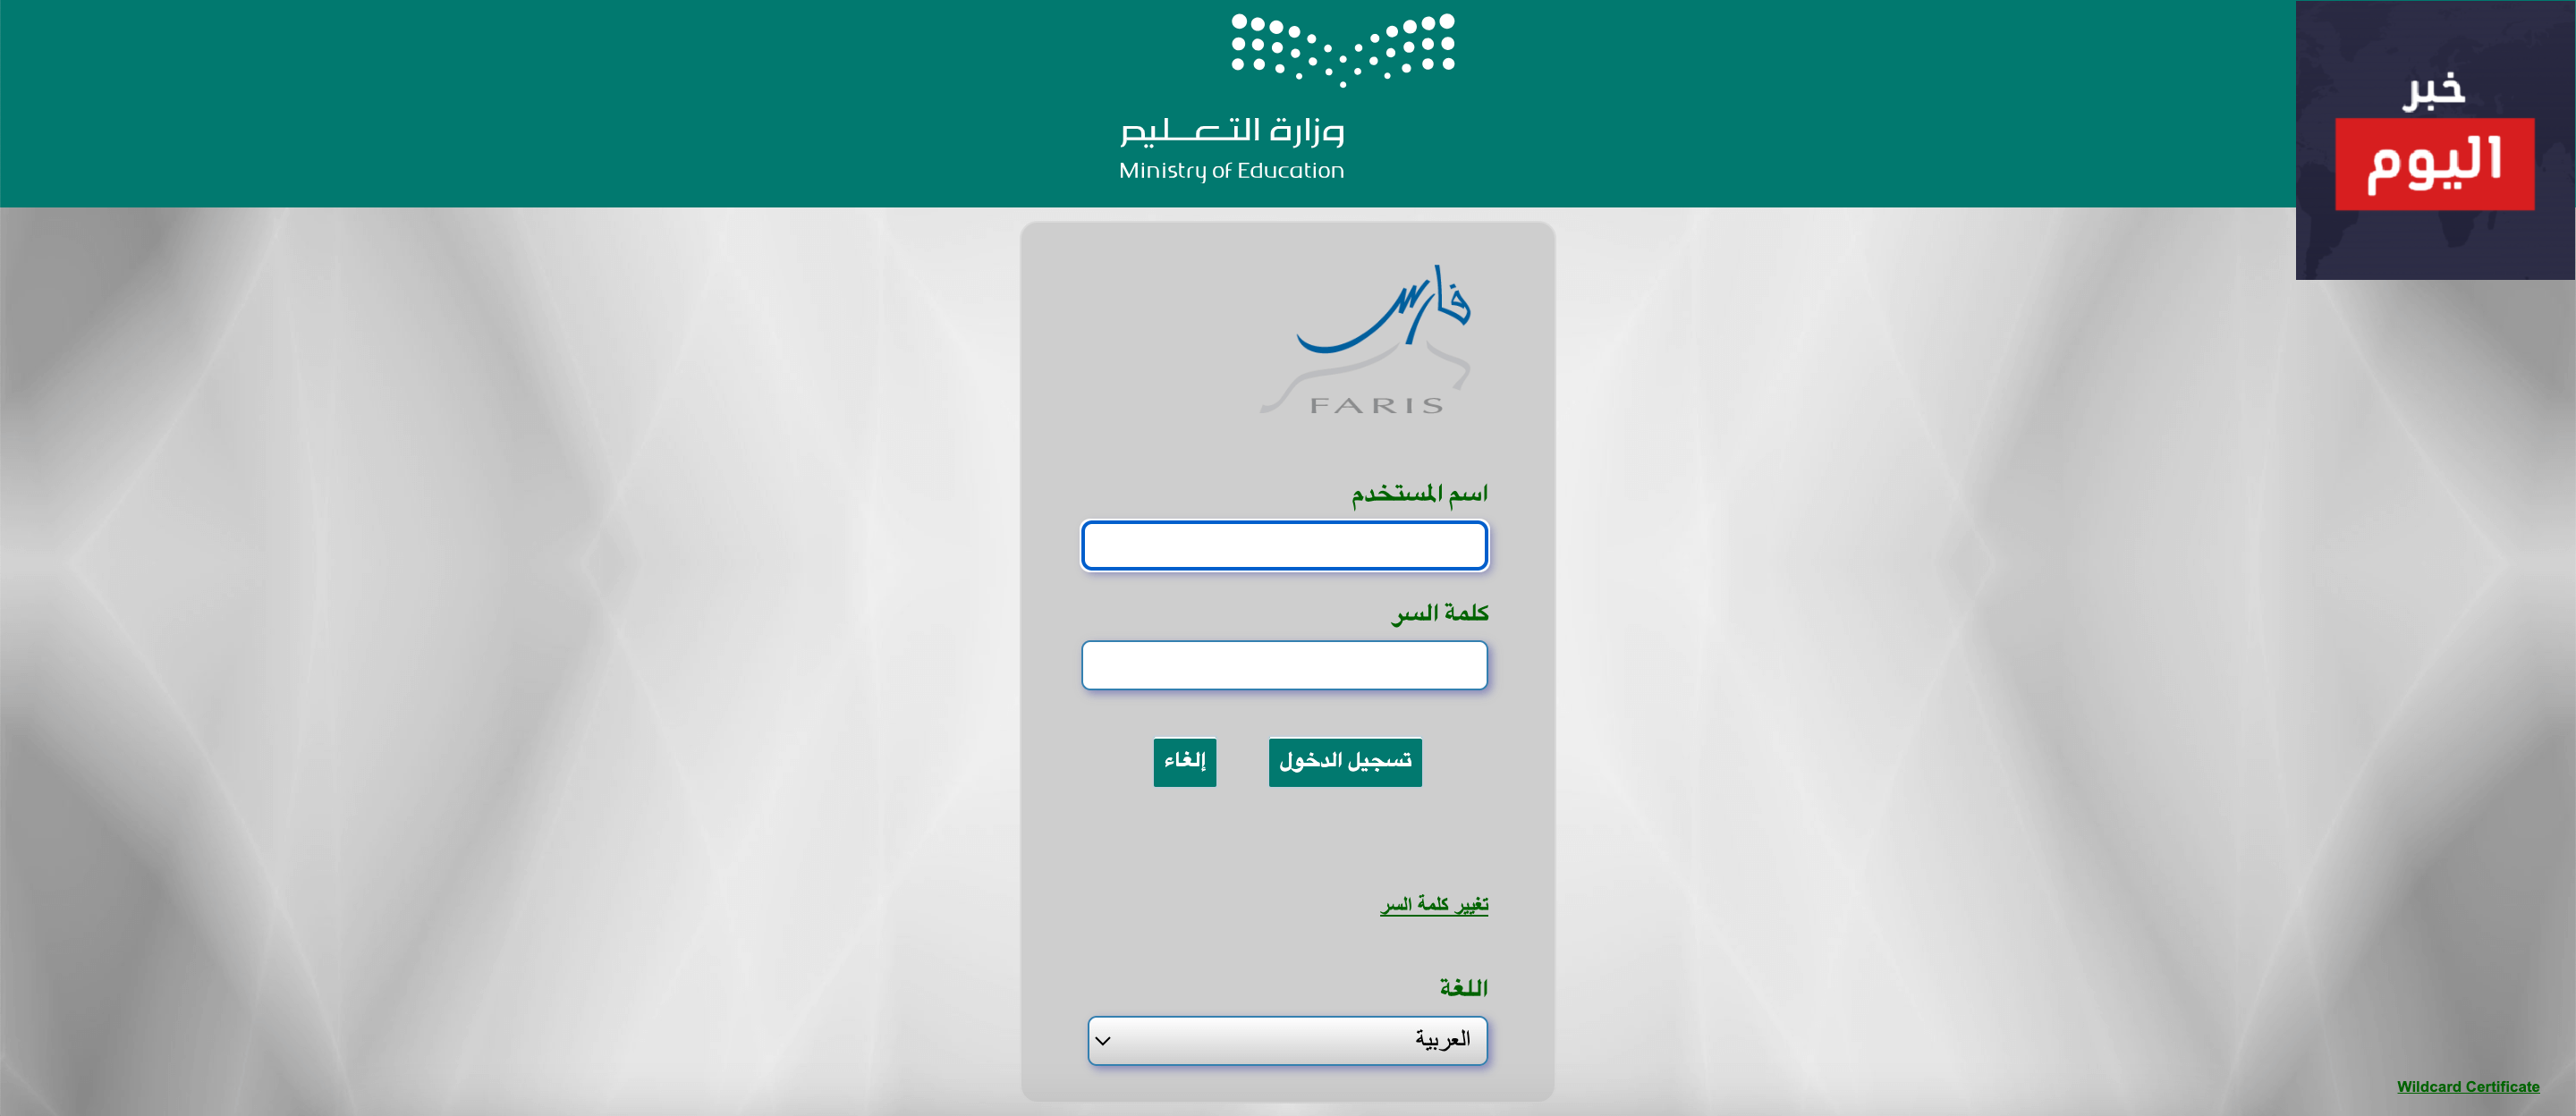 خطوات التسجيل الجديد و تسجيل الدخول في (نظام فارس) الخدمة الذاتية